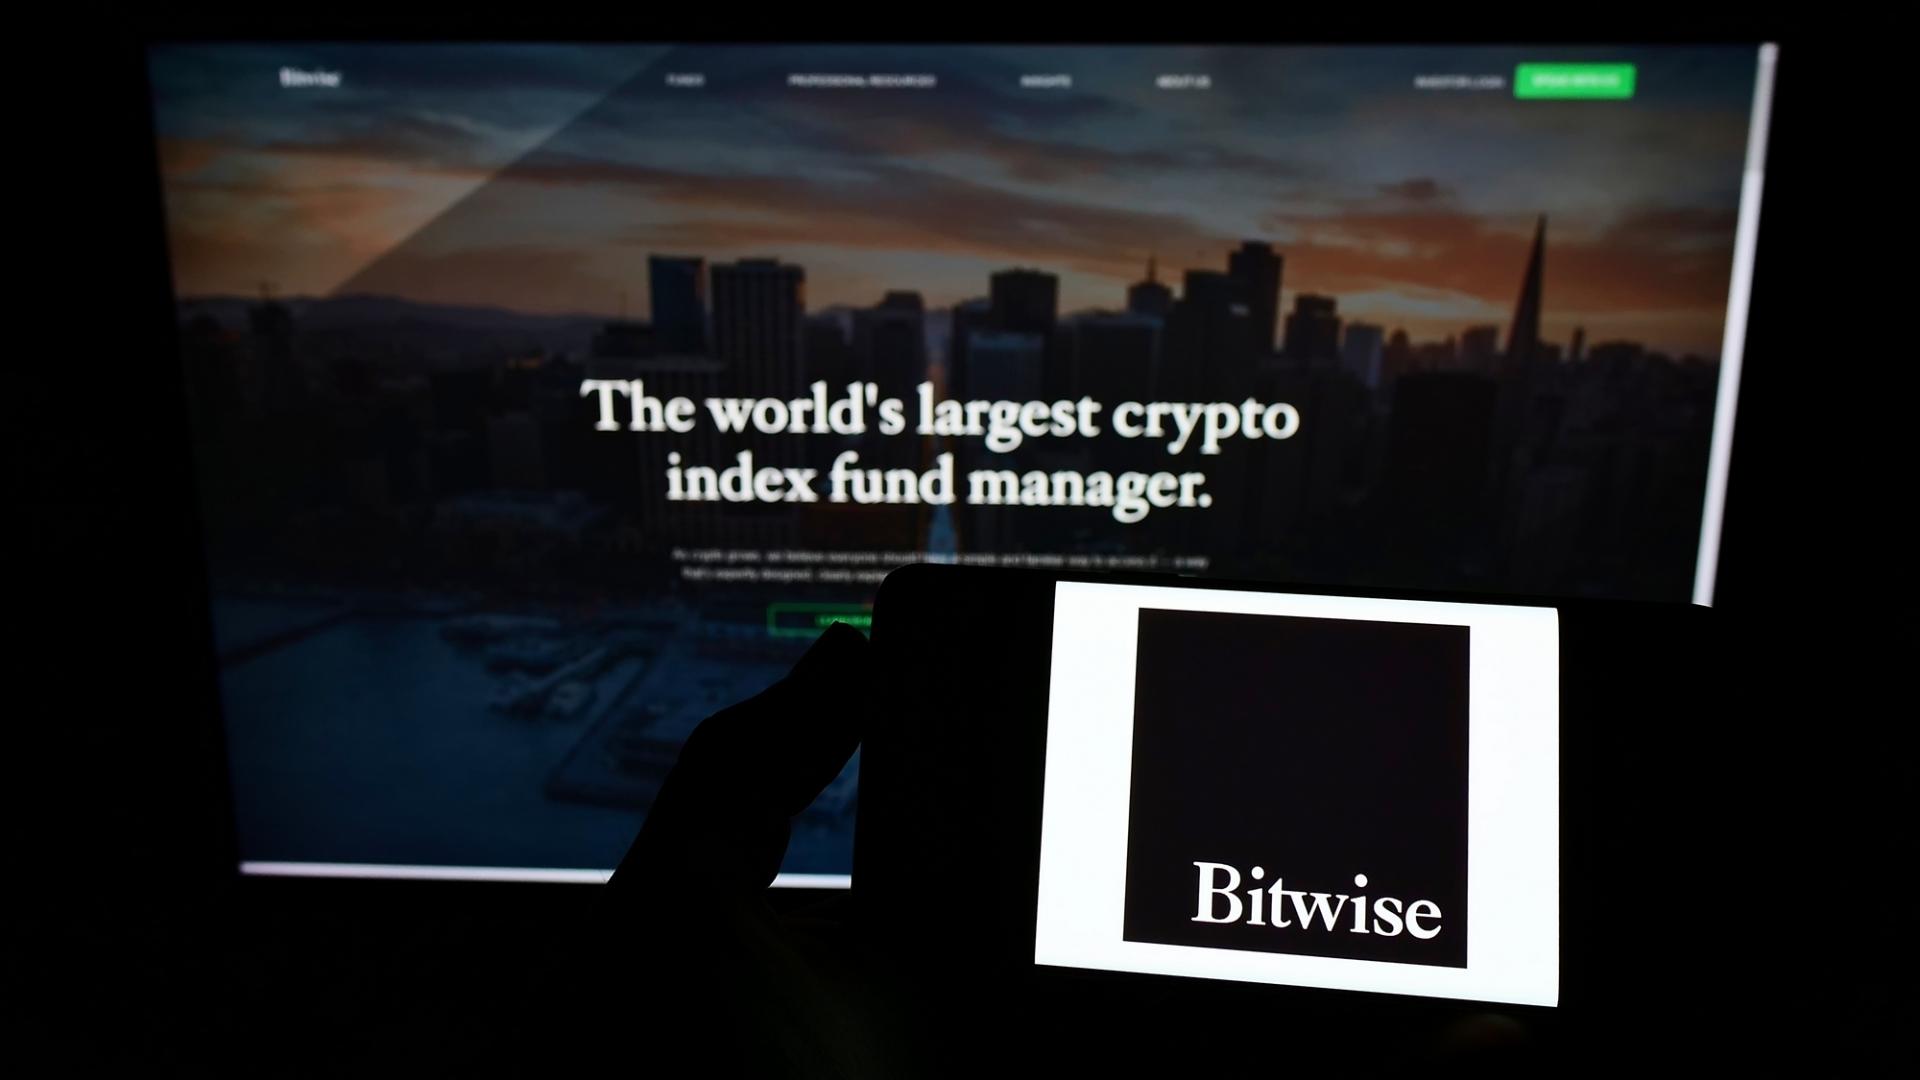 Bitwise ha publicado públicamente las direcciones de la billetera para su propio ETF de bitcoin al contado. 

Bitwise, una compañía especializada en criptomonedas, ha dado a conocer las direcciones de la billetera utilizadas en su propio fondo cotizado en bolsa (ETF) de bitcoin al contado. Esta medida busca brindar transparencia y garantizar la seguridad de los activos digitales bajo su custodia. 

Las direcciones del monedero electrónico se utilizarán para almacenar los bitcoins que respaldan el ETF y se han hecho públicas para que los inversores puedan realizar un seguimiento de los movimientos de los activos subyacentes. Esta iniciativa va en línea con los esfuerzos del sector de las criptomonedas por aumentar la confianza de los inversores y promover la adopción masiva de estas nuevas formas de inversión. 

Al proporcionar la información de las direcciones de las billeteras, Bitwise busca demostrar que los bitcoins están debidamente custodiados y que son accesibles de manera segura. Esto es especialmente relevante dado el aumento en la amenaza de ciberataques y hackeos en el ecosistema criptográfico. 

Los ETFs de bitcoin al contado permiten a los inversores obtener exposición al mercado de bitcoin sin tener que manejar directamente los activos digitales. Estos fondos son una opción cada vez más popular, ya que permiten a inversores institucionales y minoristas diversificar sus carteras y participar en el crecimiento del mercado de las criptomonedas. 

En resumen, Bitwise ha anunciado públicamente las direcciones de las billeteras utilizadas en su ETF de bitcoin al contado, destacando su compromiso con la seguridad y transparencia en la custodia de los activos digitales. Esta medida es un paso positivo para fortalecer la confianza de los inversores y fomentar la adopción de las criptomonedas en el mercado financiero